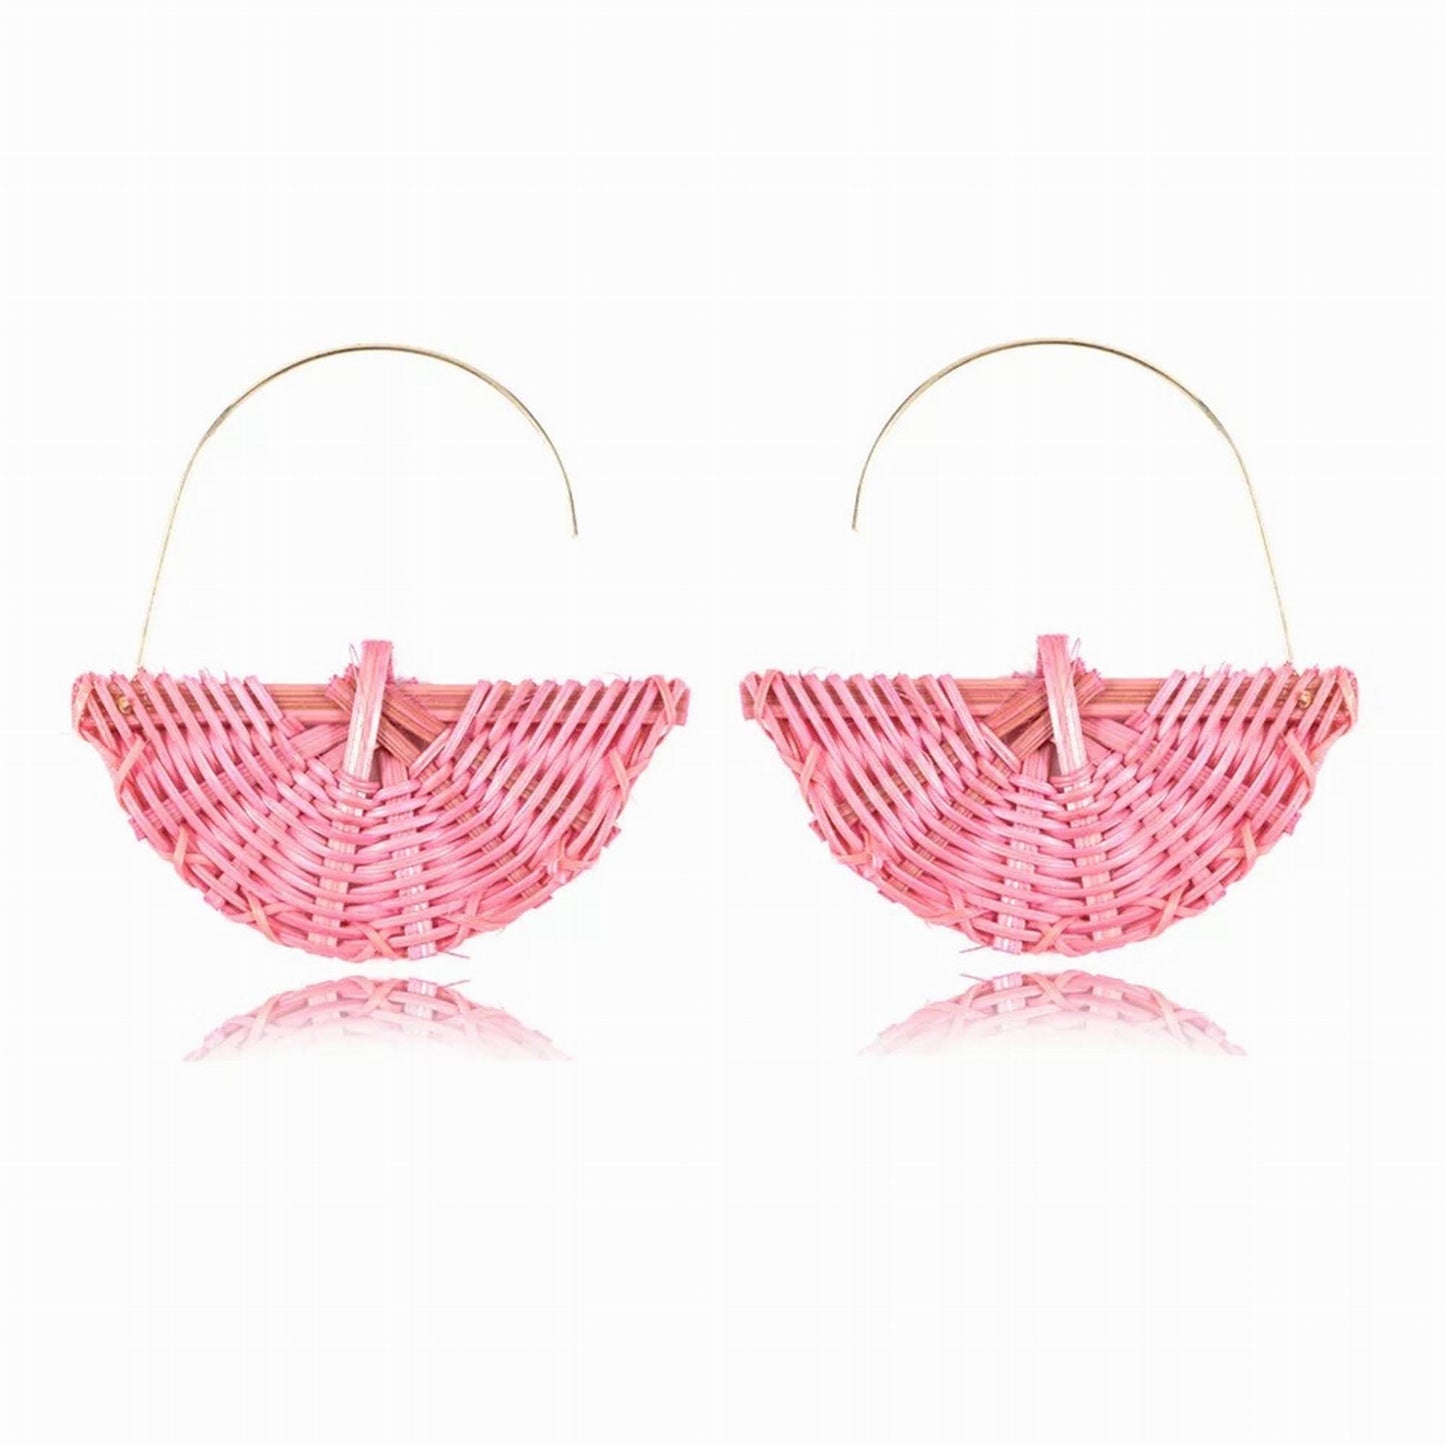 Pink Rattan Earrings, Fan Shape Woven Earrings